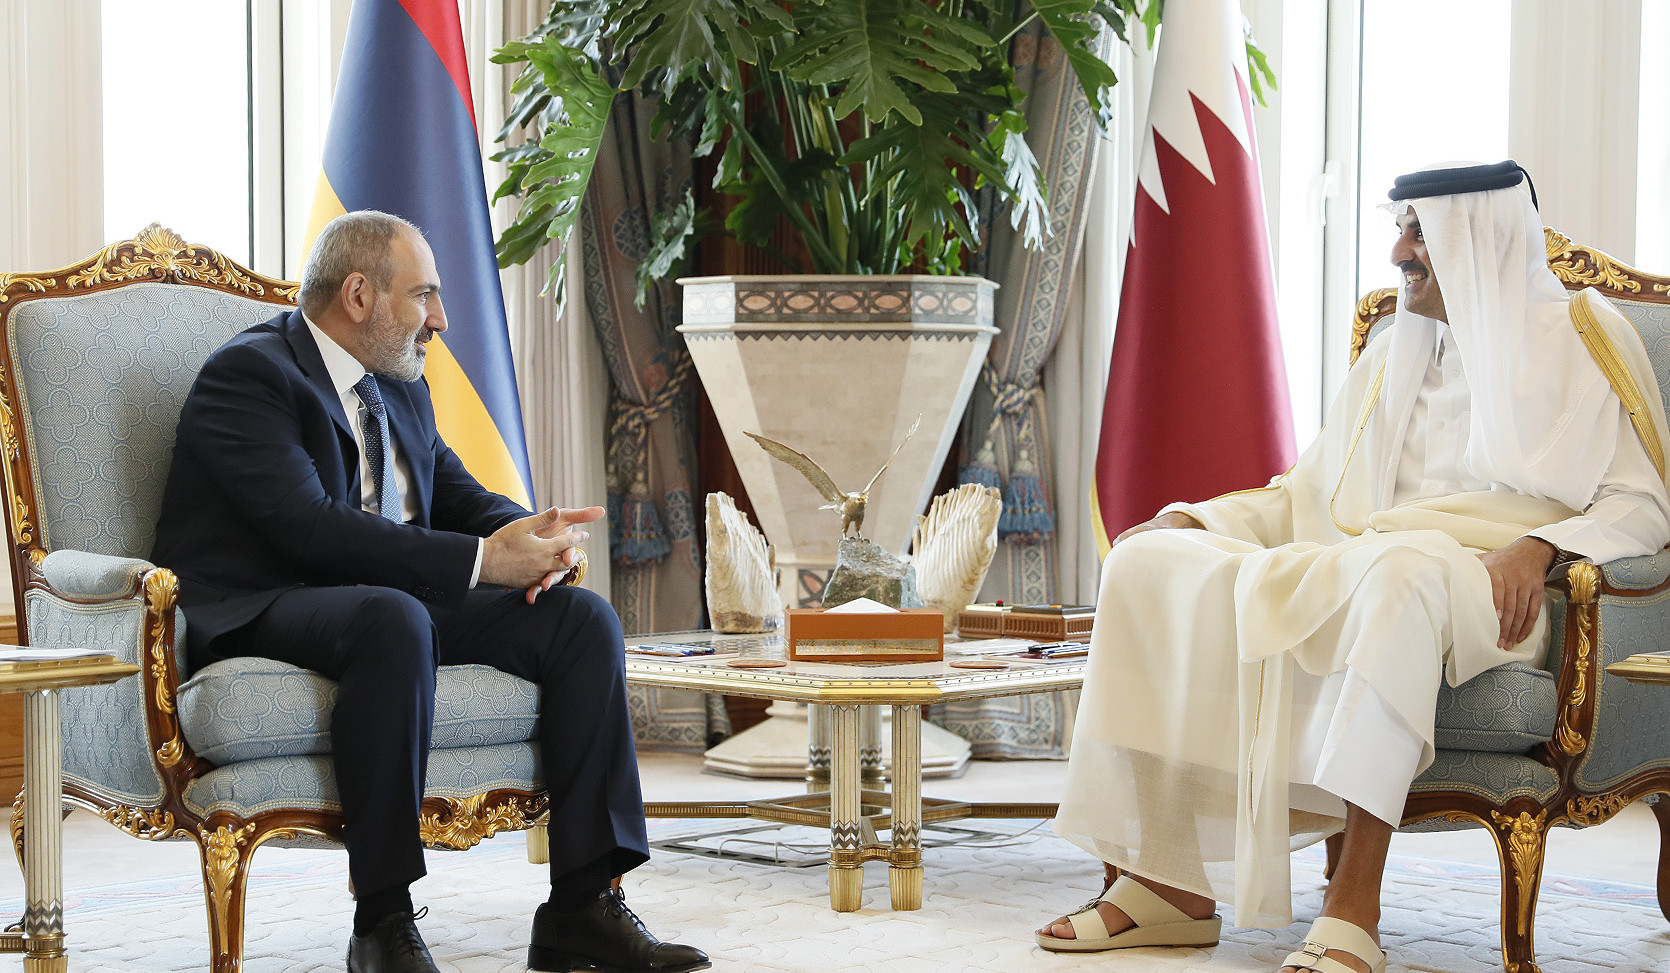 ՀՀ վարչապետը և Կատարի էմիրը քննարկել են երկու երկրների համագործակցության զարգացմանը վերաբերող հարցեր